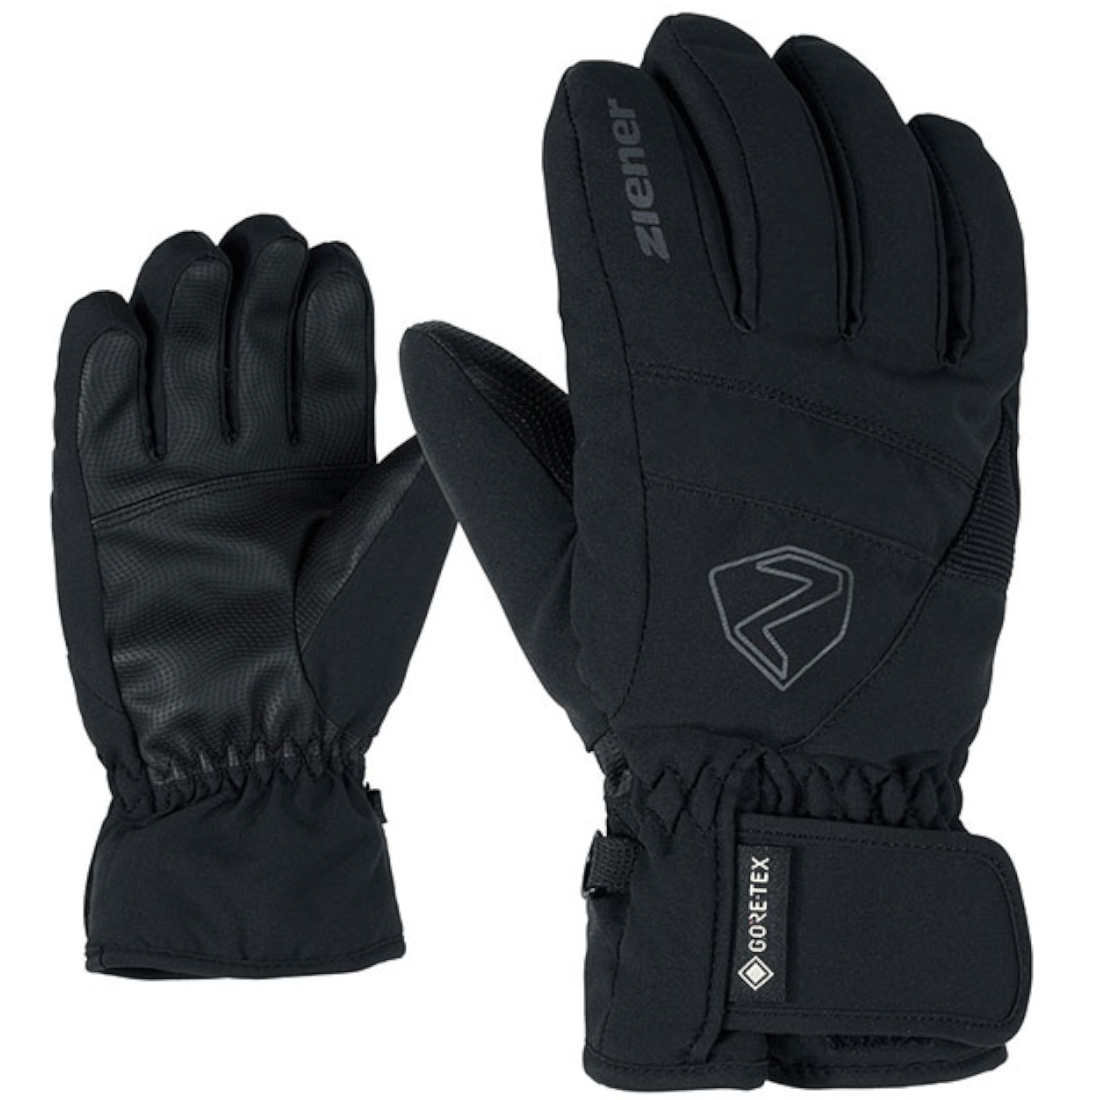 Ziener LEIF GTX kids Handschuh - black, 39,95 € | Fahrradhandschuhe